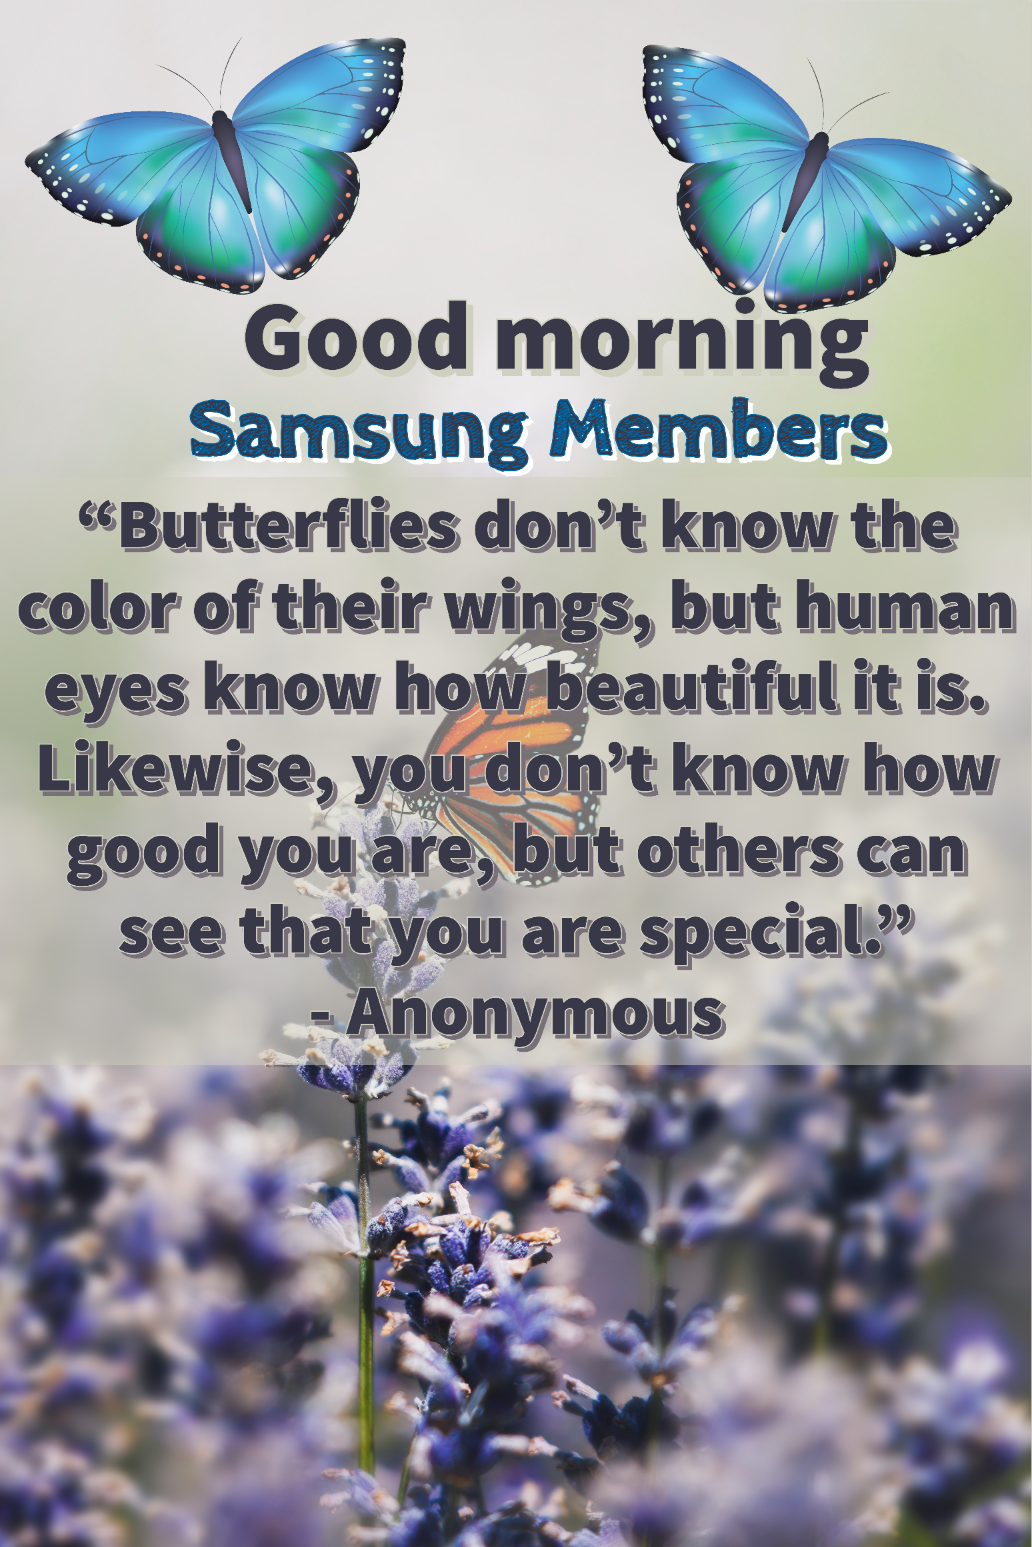 Good morning members - Samsung Members